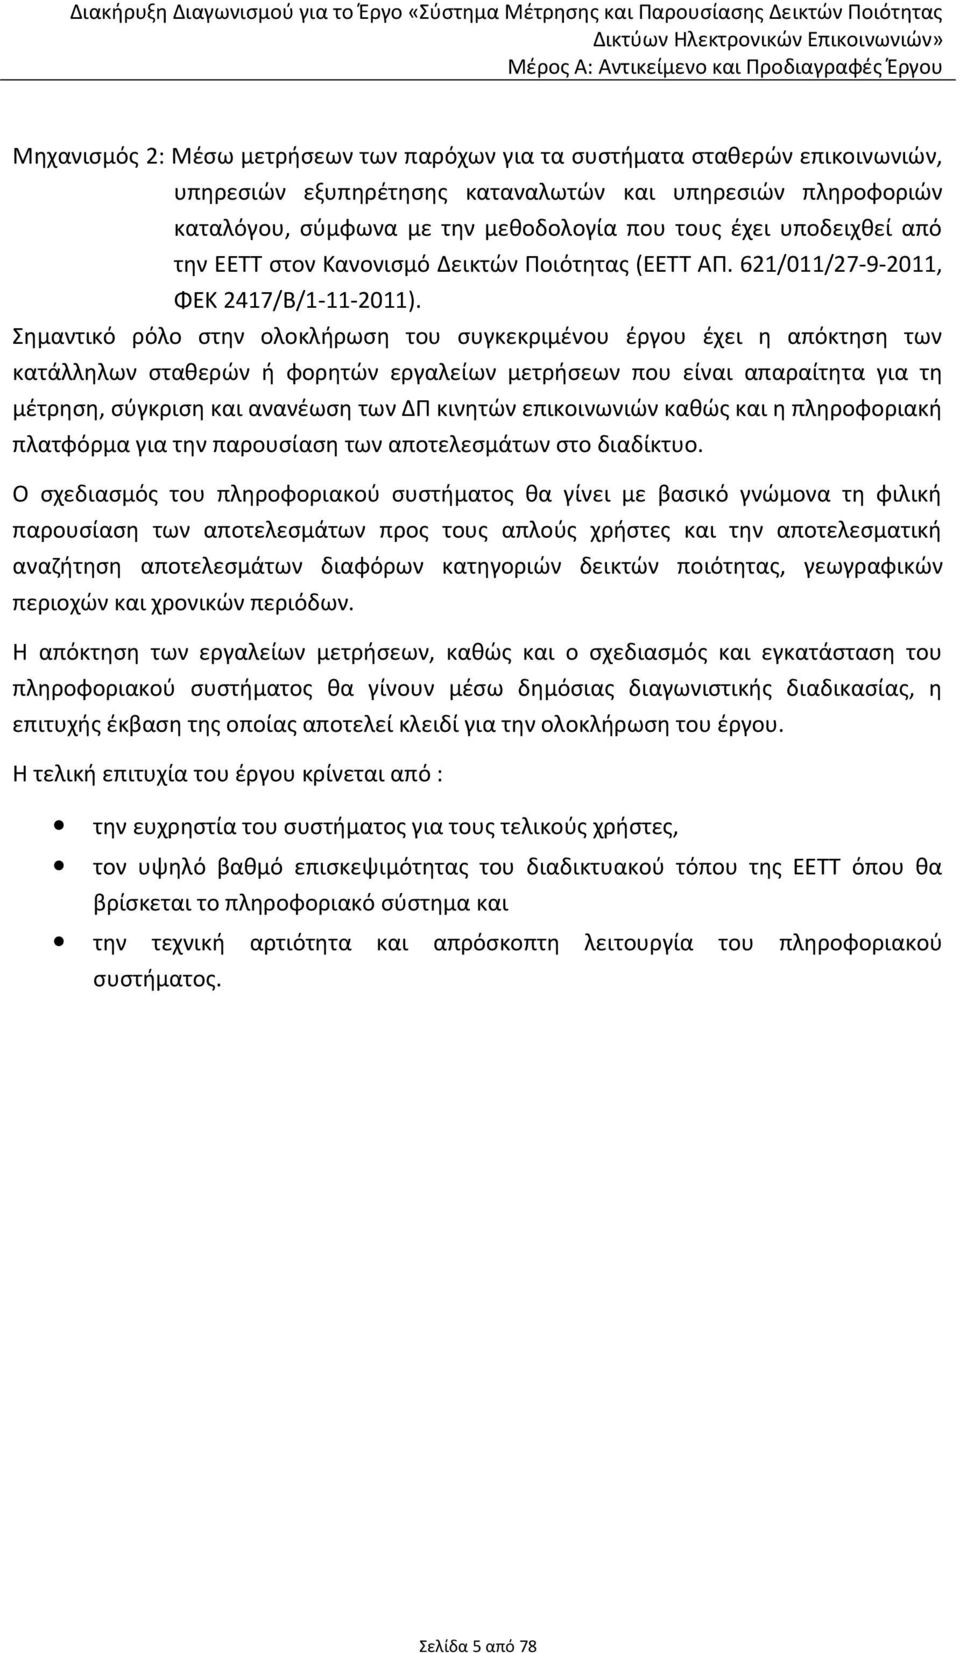 Δεικτών Ποιότητας (ΕΕΤΤ ΑΠ. 621/011/27-9-2011, ΦΕΚ 2417/Β/1-11-2011).